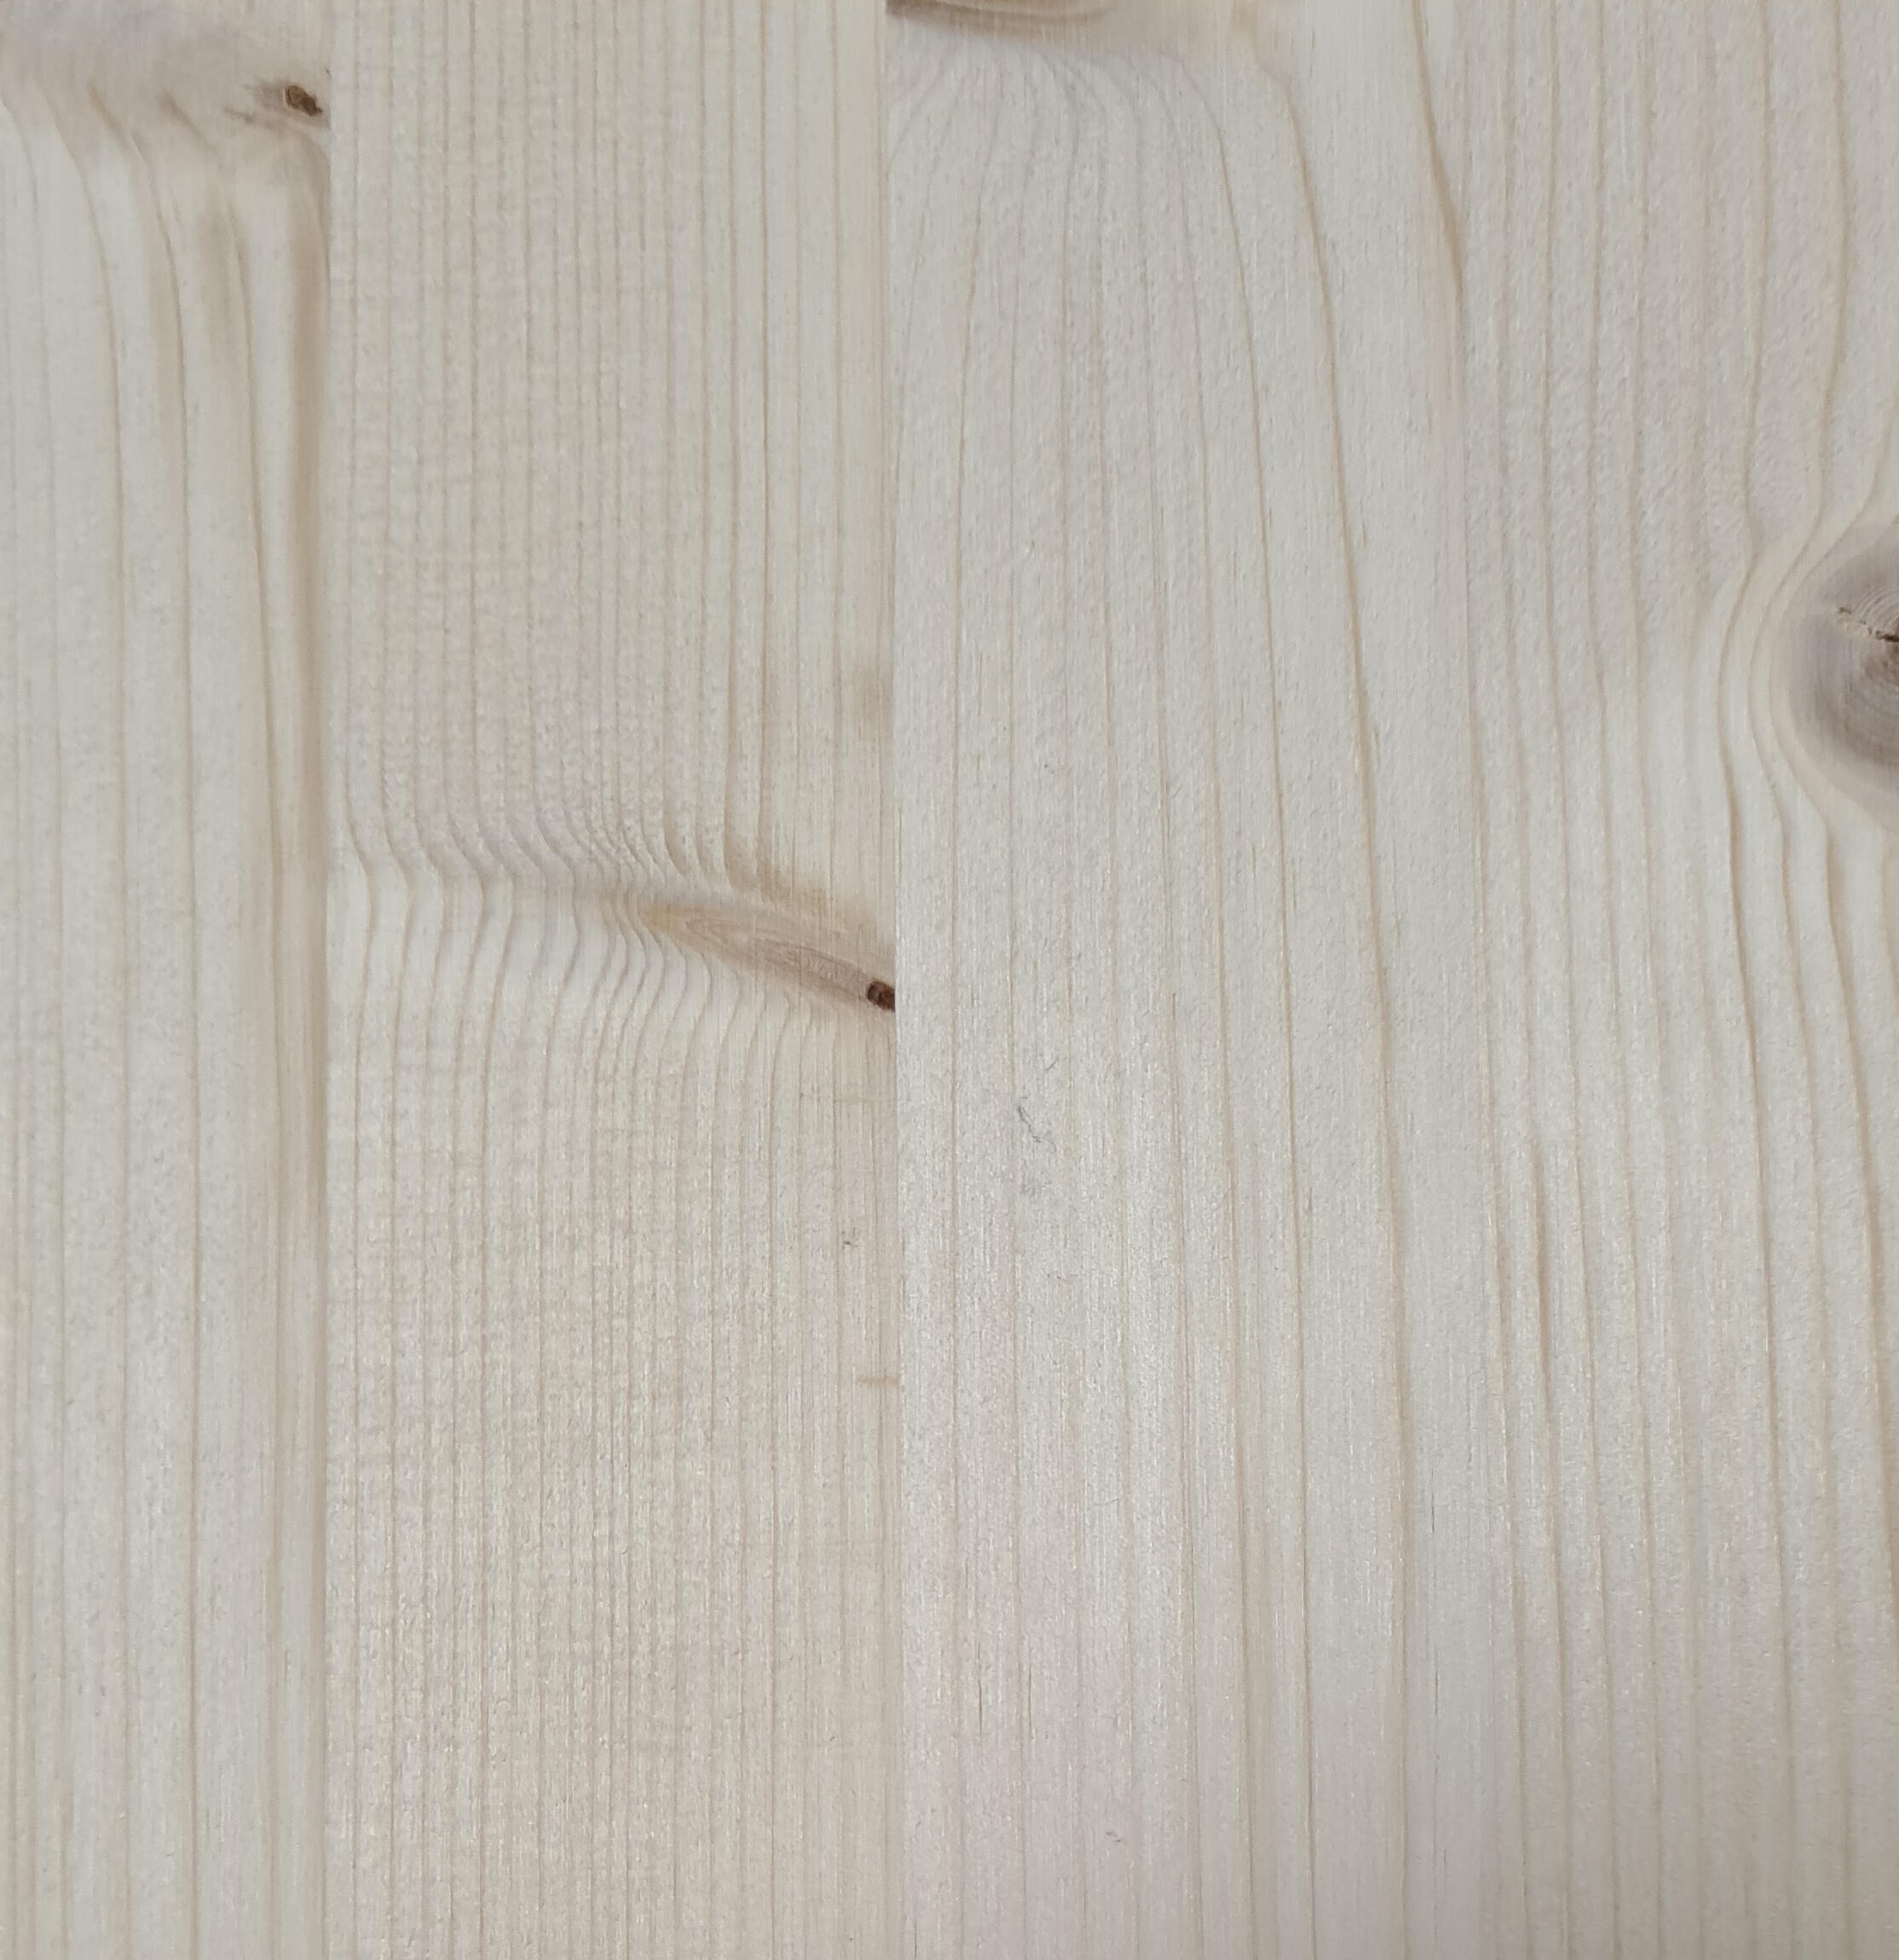 Tavola legno lamellare abete 1° scelta 60 x 40 cm Sp 18 mm - 3